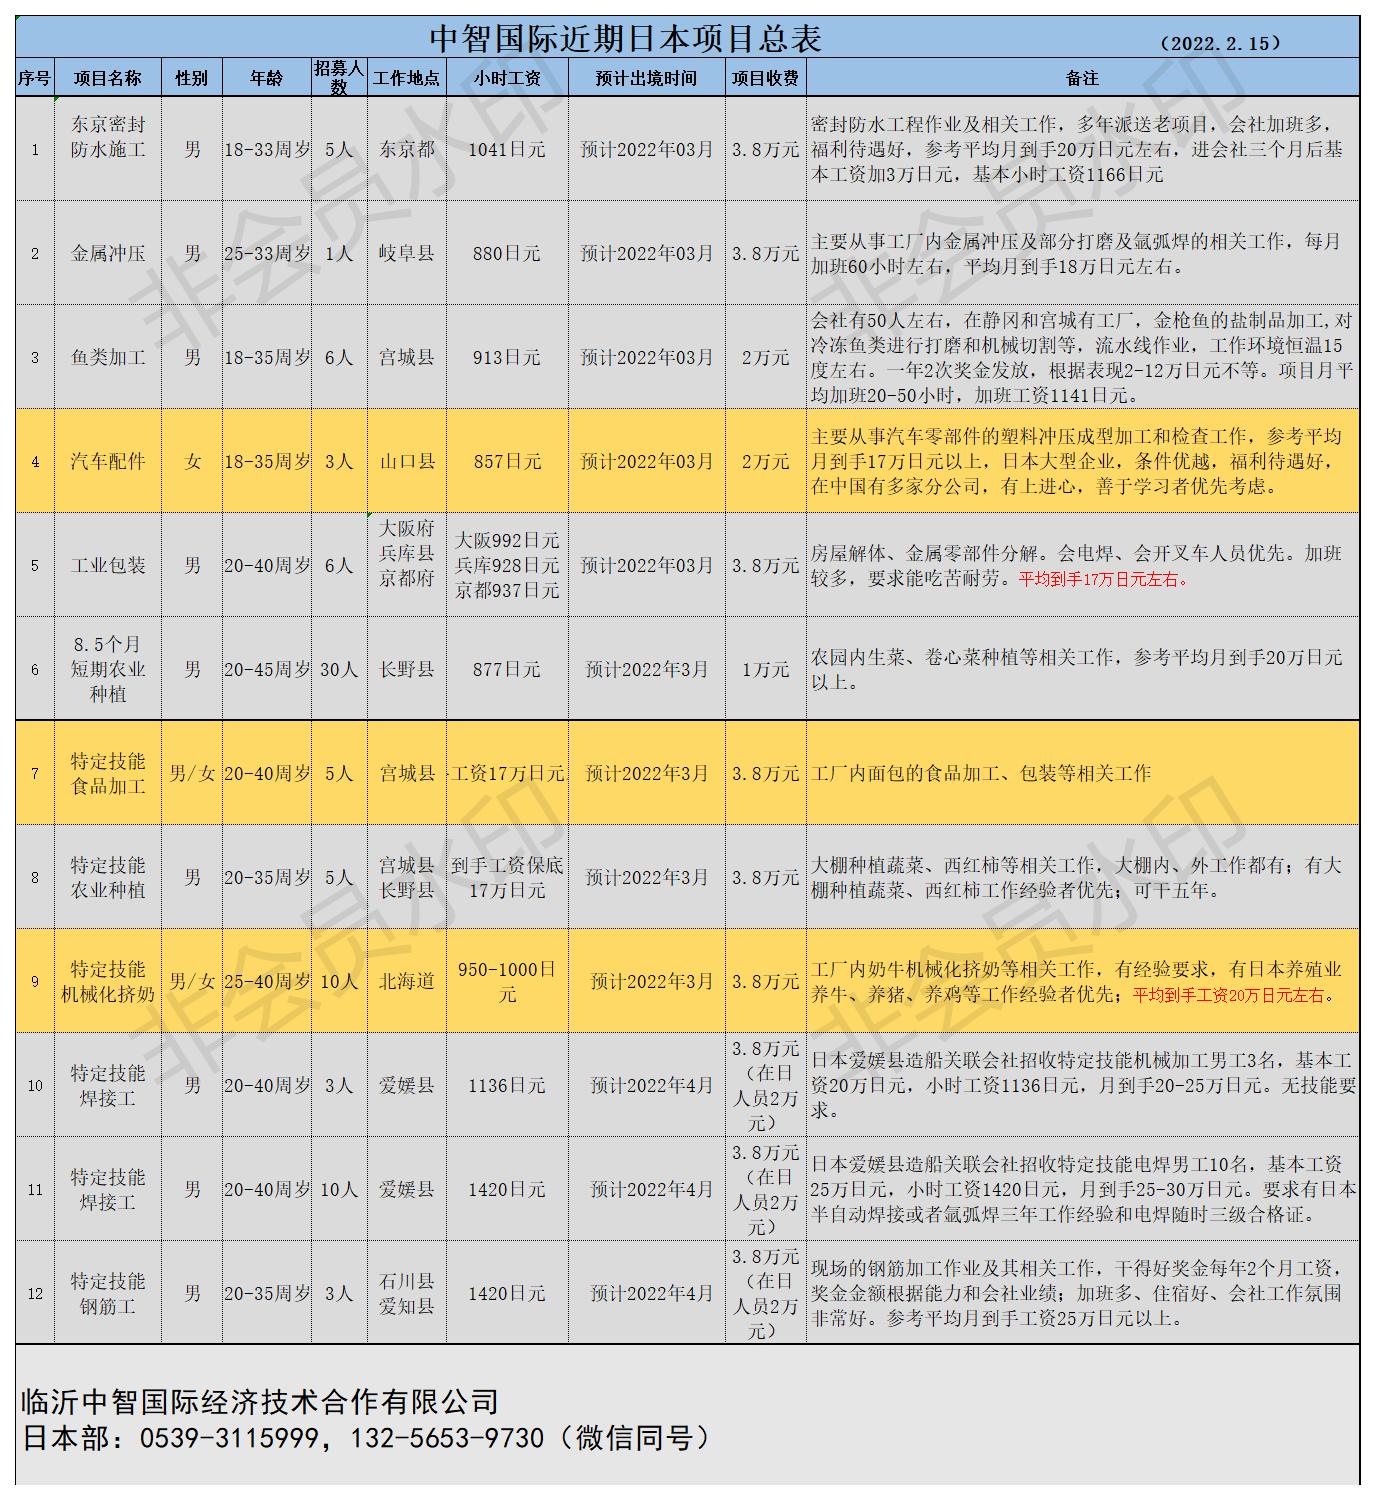 中智国际近期日本项目总表22.2.8(9).jpg